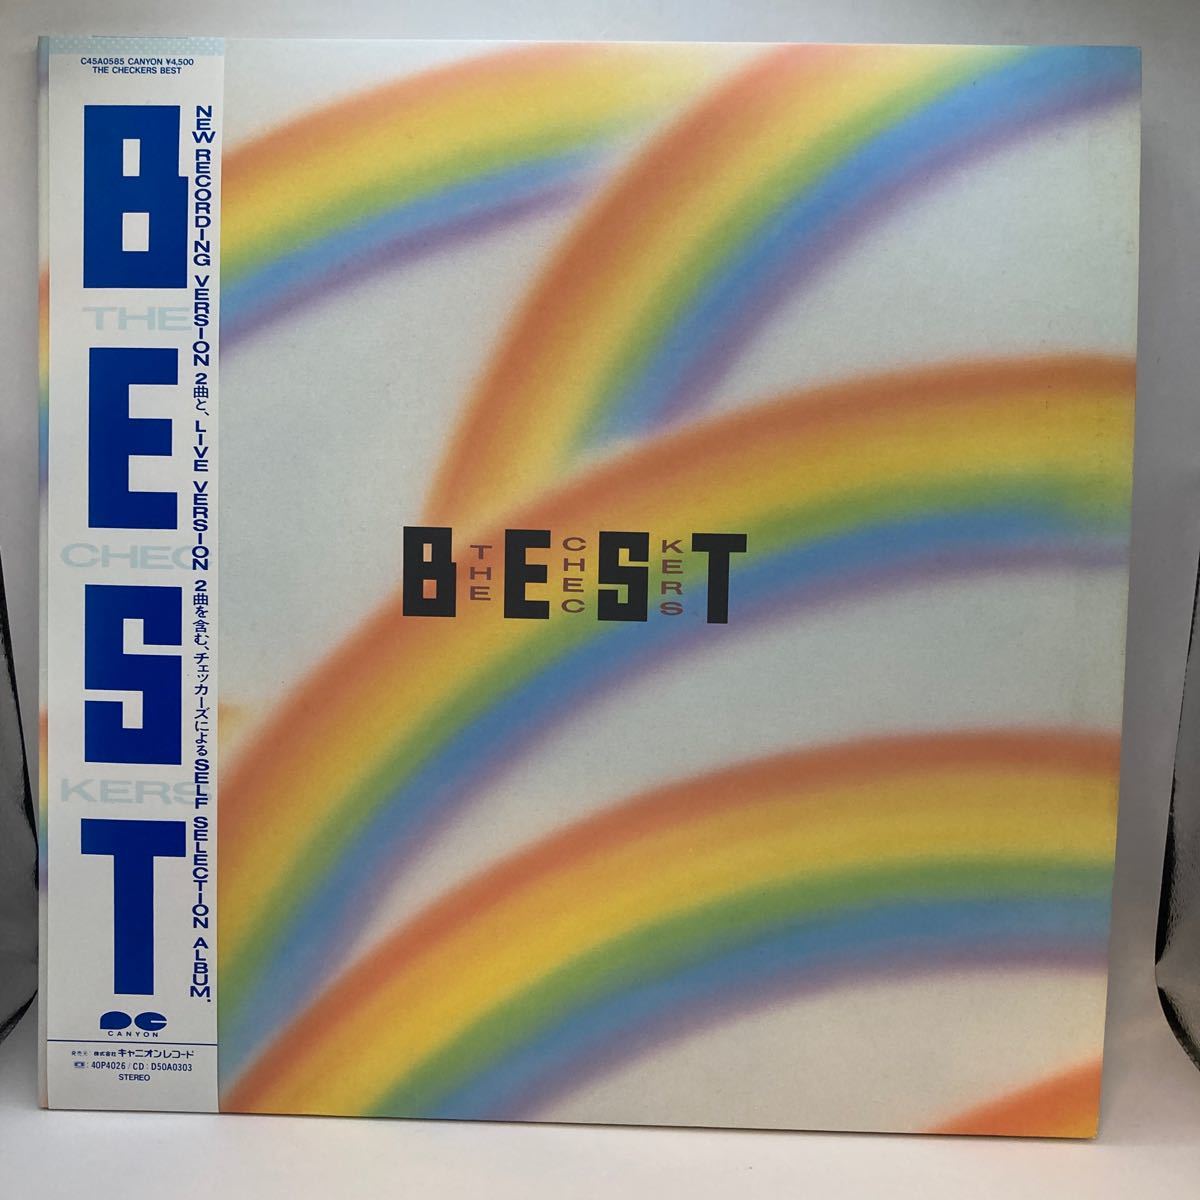 良好品 美盤 LP2枚組/チェッカーズ(藤井フミヤ)「The Checkers Best (1987年・C45A-0585・ベストアルバム・ライヴ録音・新録音Ver.収録有)の画像1